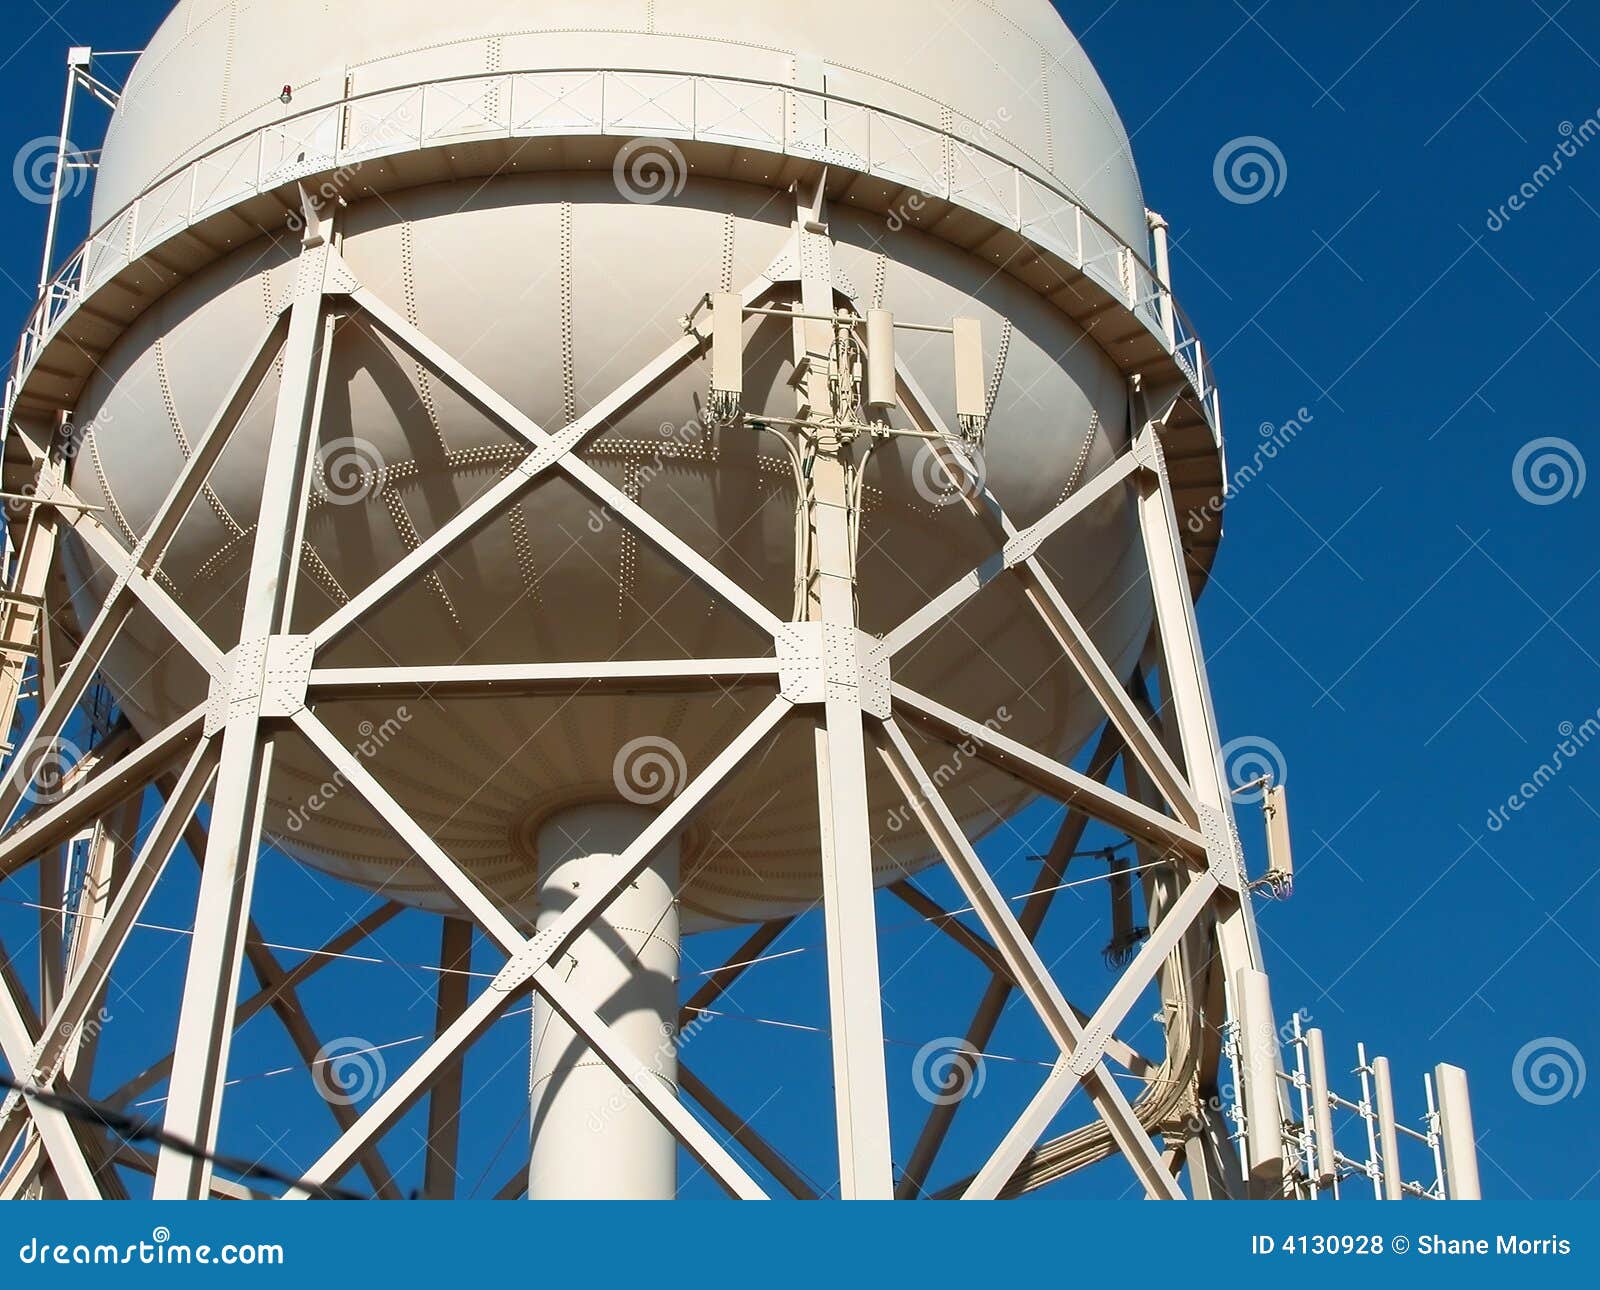 municipal water tower